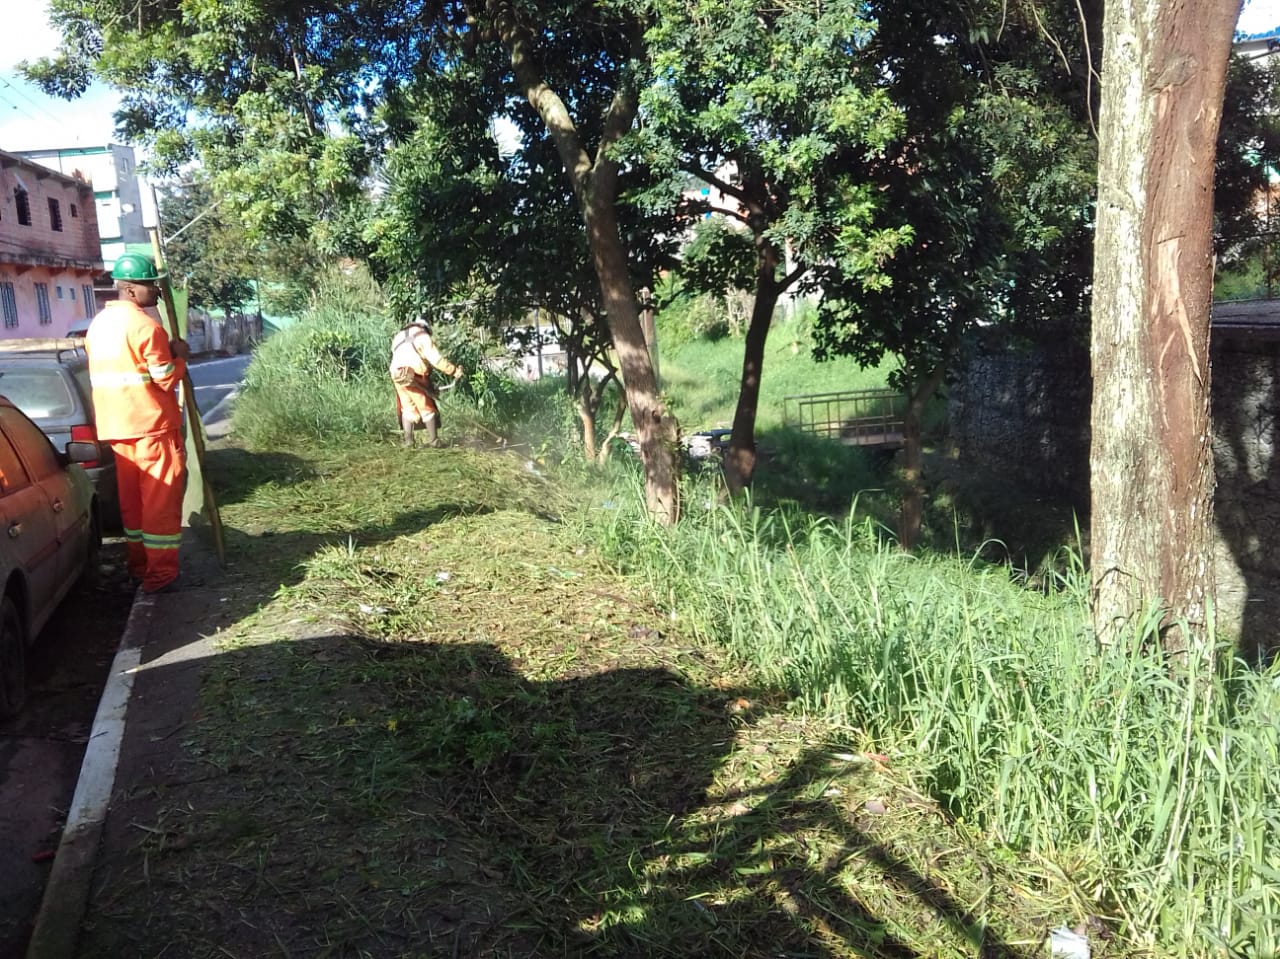 #PraCegoVer - Trabalhadores da Subprefeitura cortam grama e mato à beira de córrego. Há árvores no local.